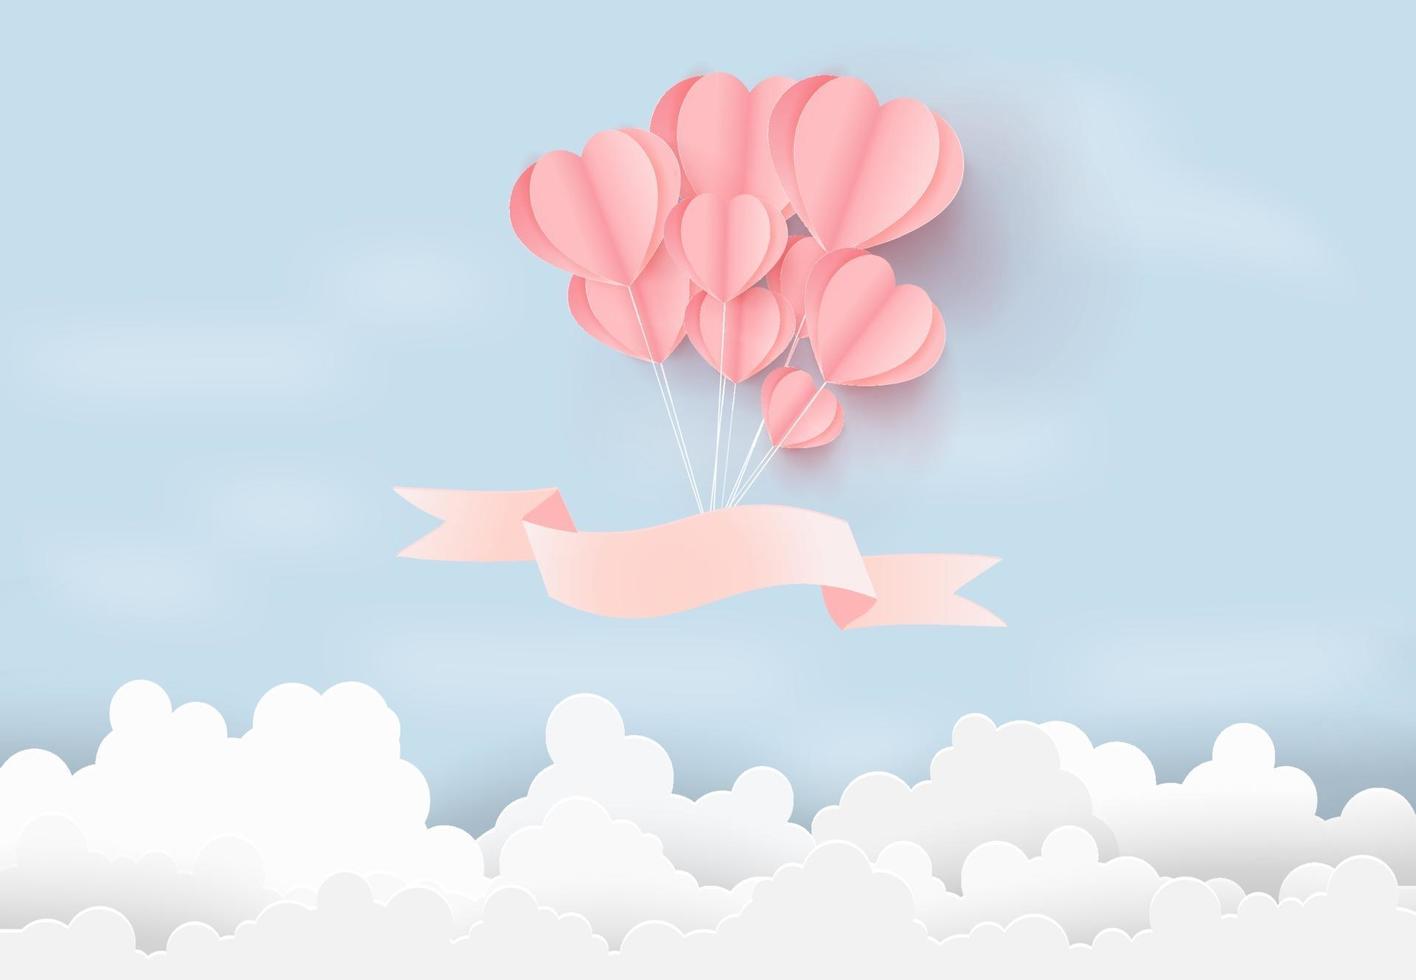 Ilustración de amor con globos de corazón flotando en el cielo, concepto de San Valentín. estilo de arte de papel. vector